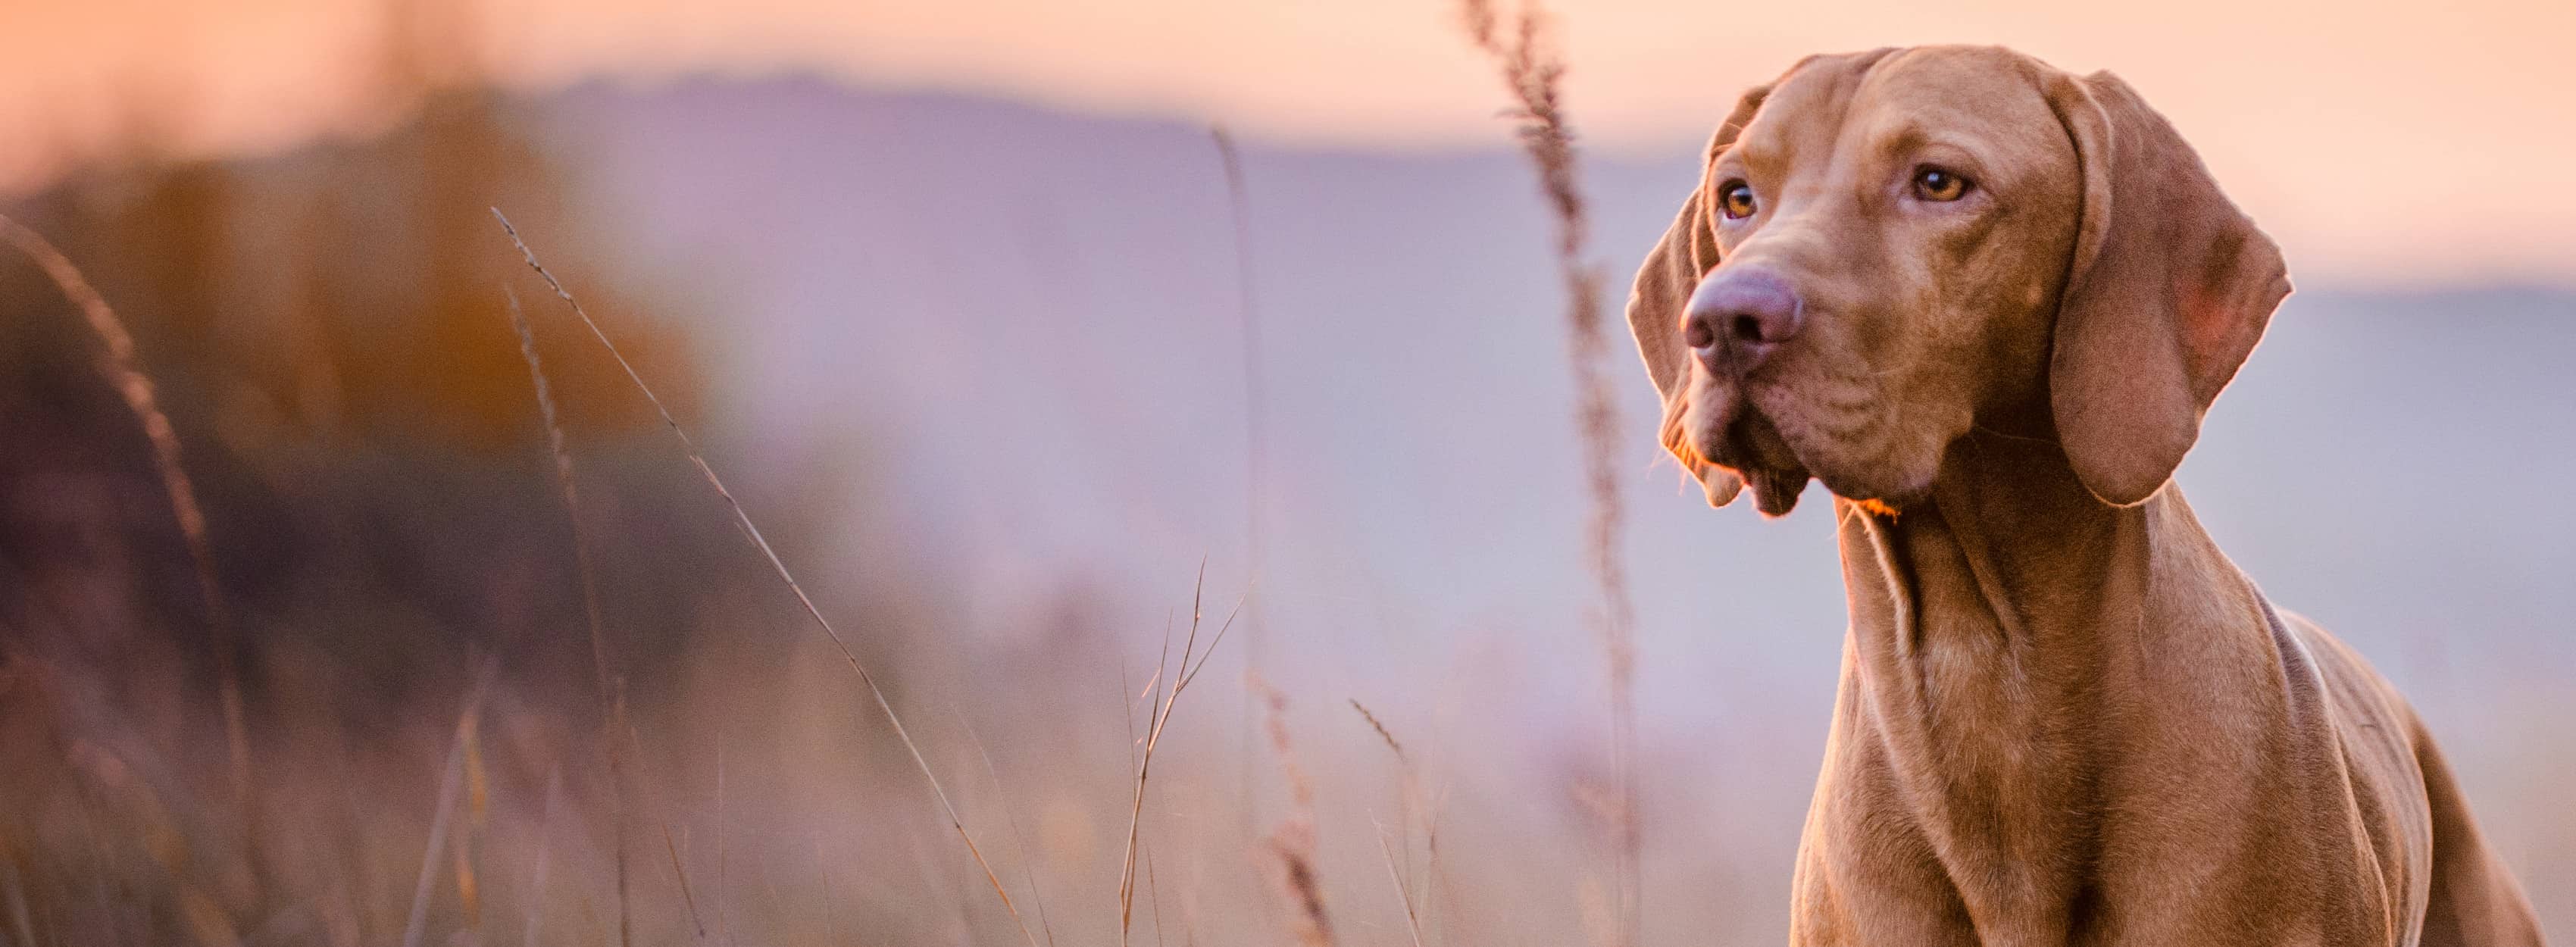 Bruin hond buiten staand in een veld